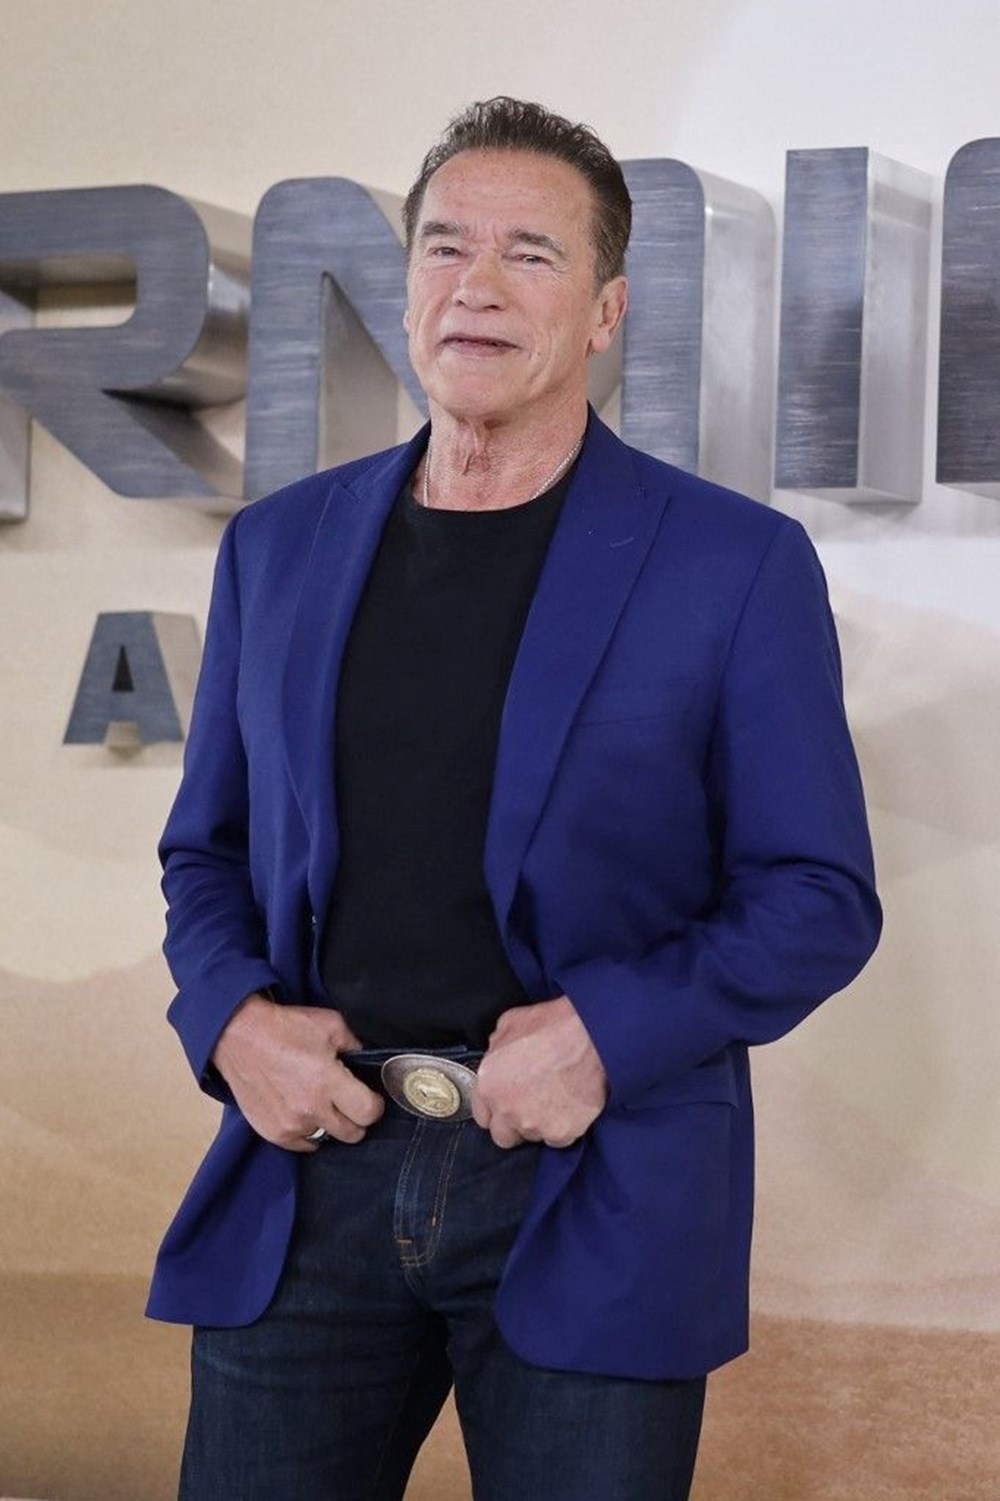 Arnold Schwarzenegger'e kalp pili takıldı: Biraz daha makineye dönüştüm - 5